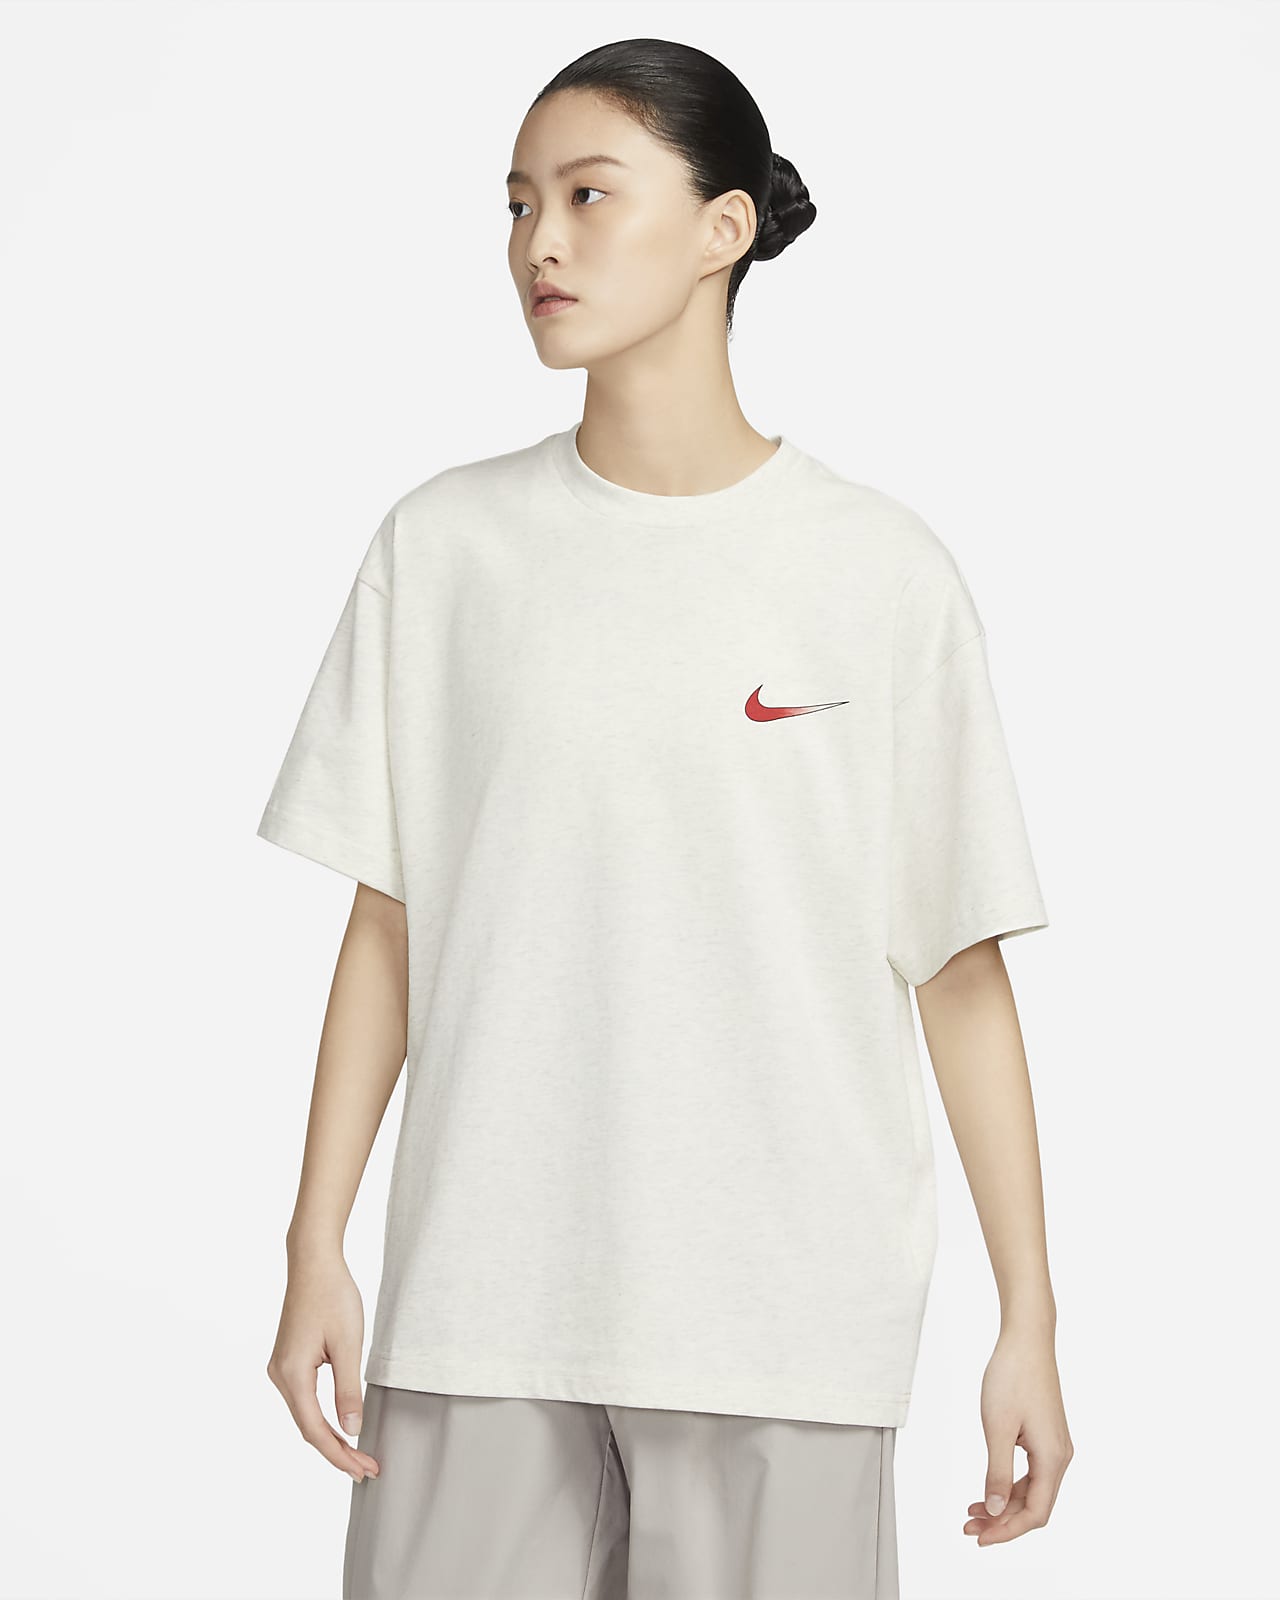 Nike 男/女T恤